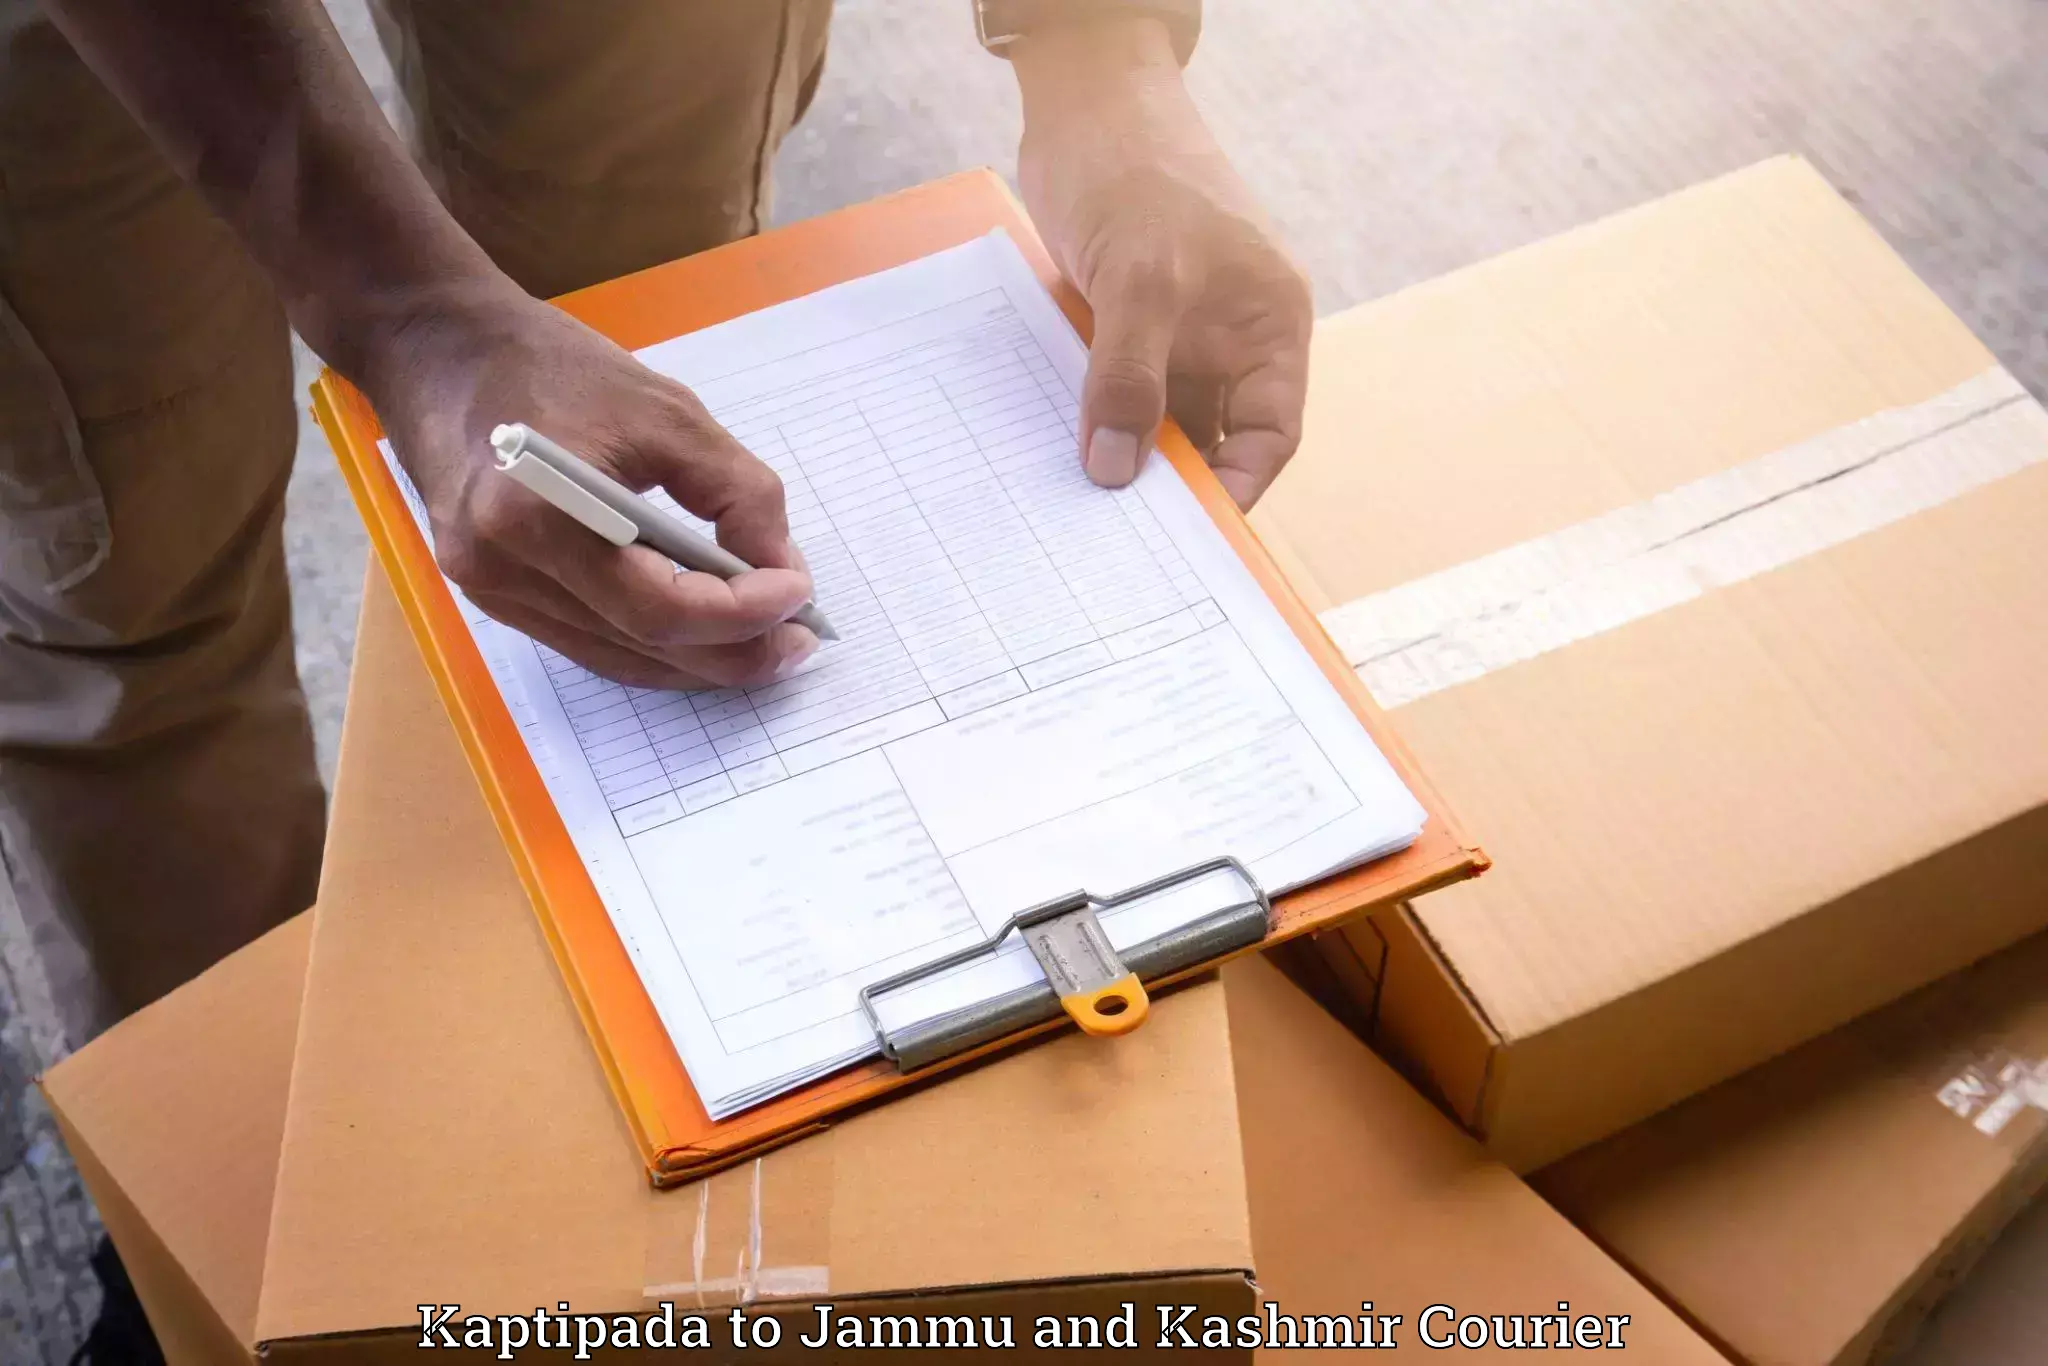 Personalized moving service Kaptipada to University of Jammu